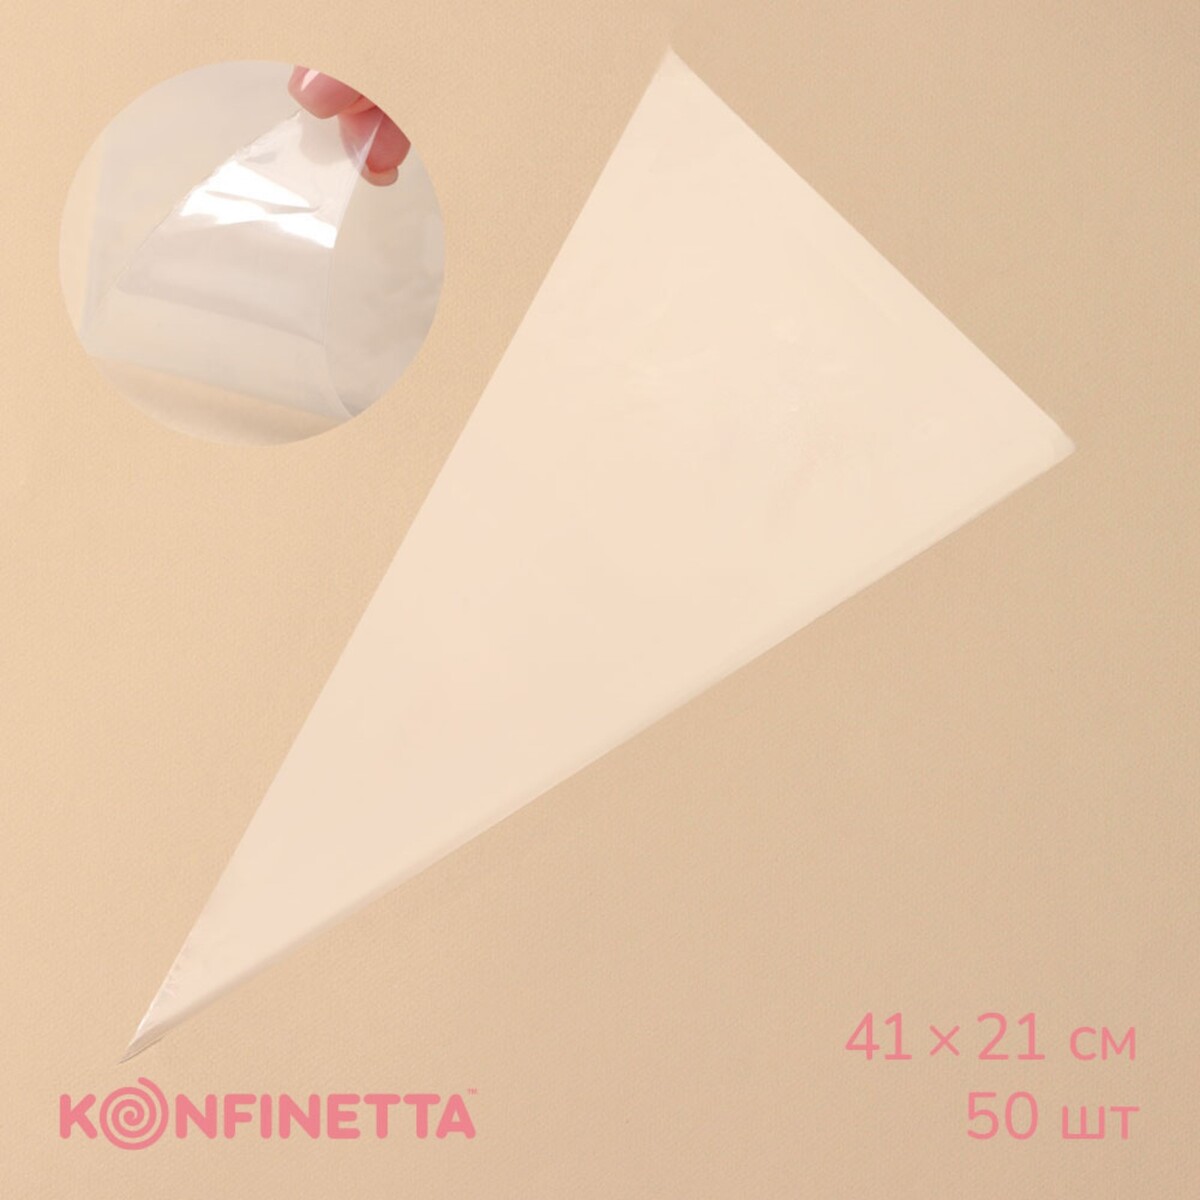 Кондитерские мешки konfinetta, 41×21 см, 50 шт, цвет прозрачный кондитерский мешок konfinetta 35×21 см хлопок